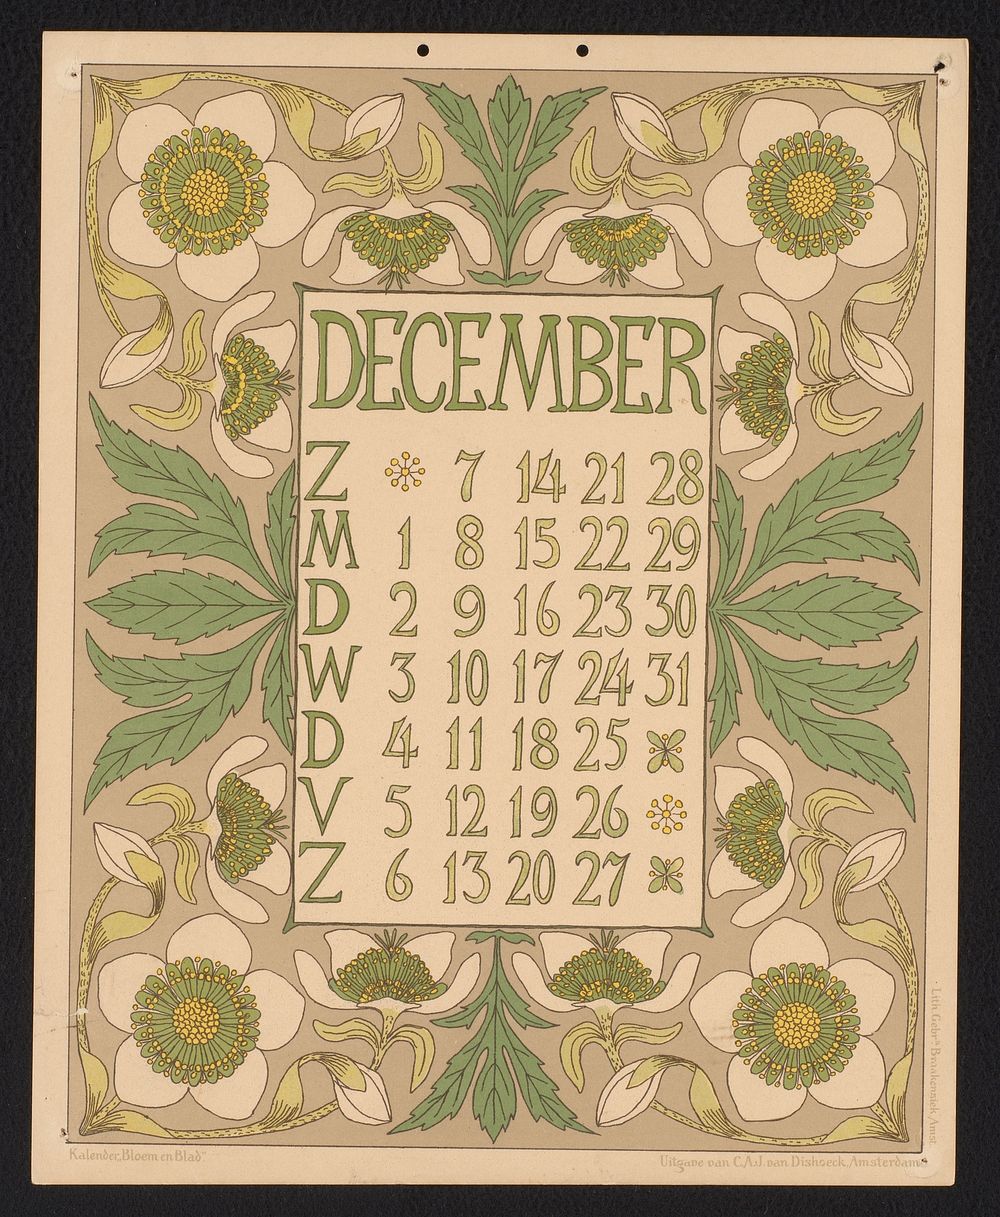 Kalenderblad voor december 1902 met kerstroos (1901) by Gebroeders Braakensiek, Netty van der Waarden and C A J van Dishoeck